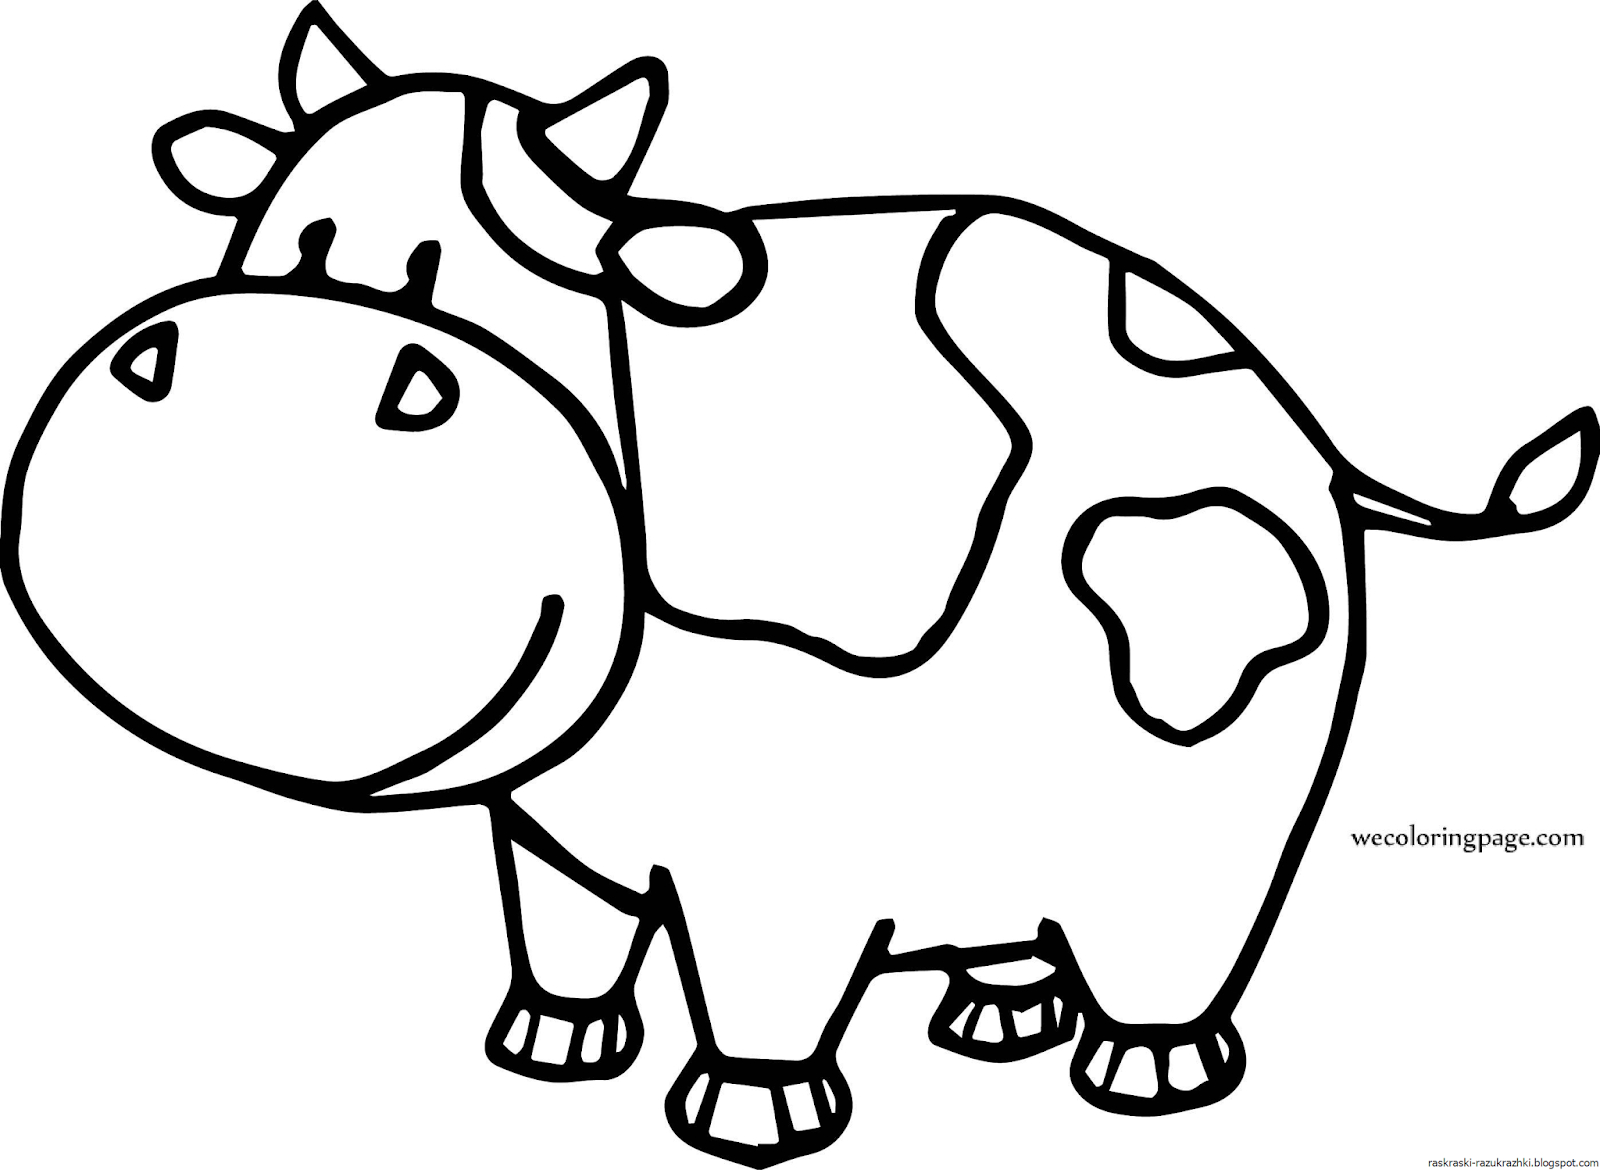 Раскраски коровки для детей. Раскраска корова. Коровка. Раскраска. Коровка раскраска для детей. Коровка раскраска для малышей.